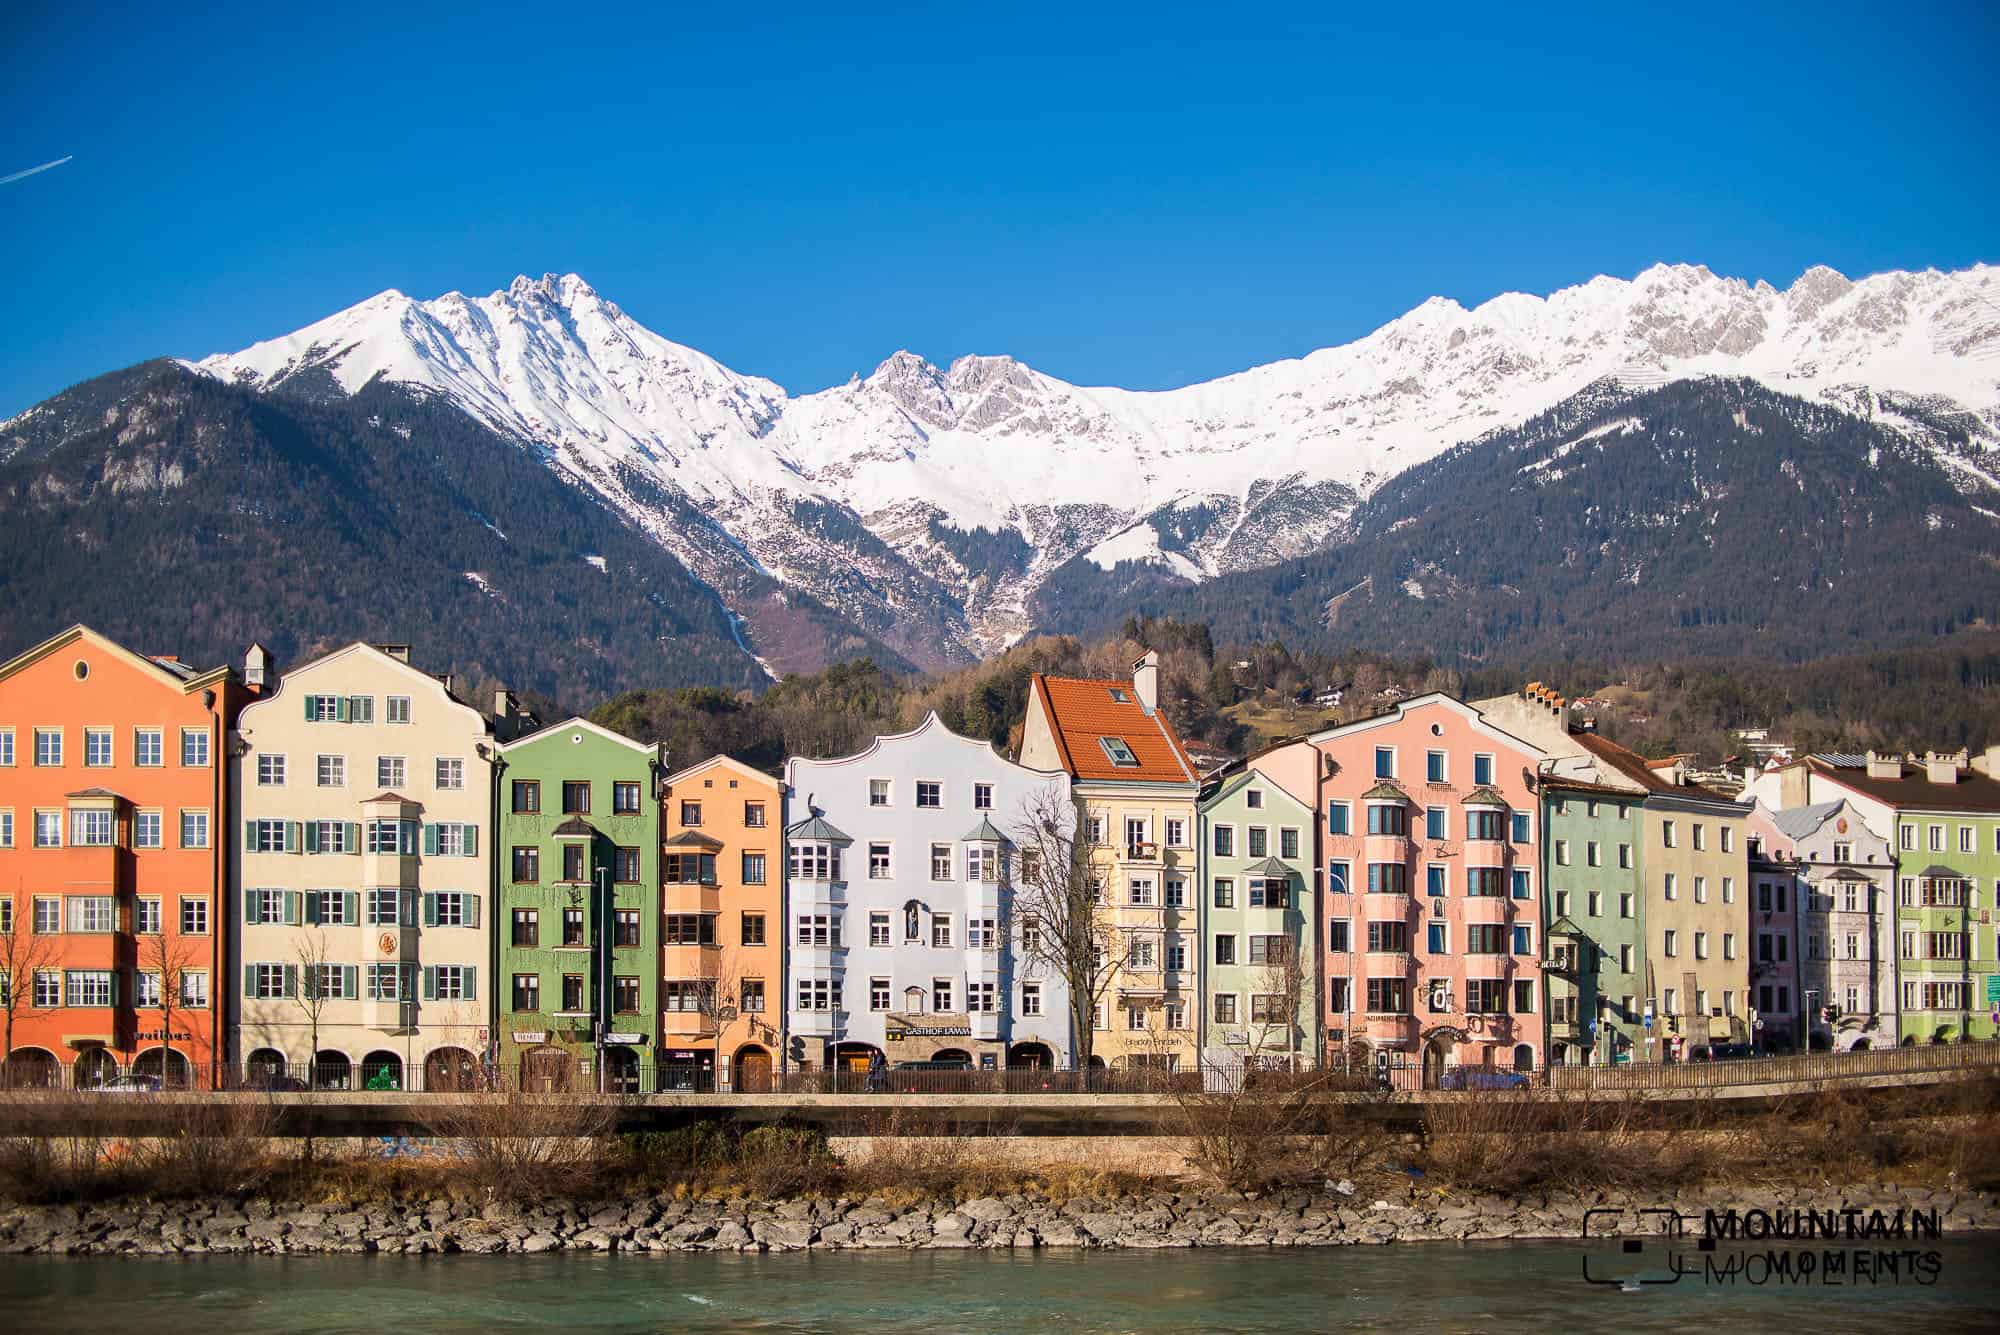 Gratis in Innsbruck? 15 kostenlose Dinge + Erlebnisse – Tipps vom Local